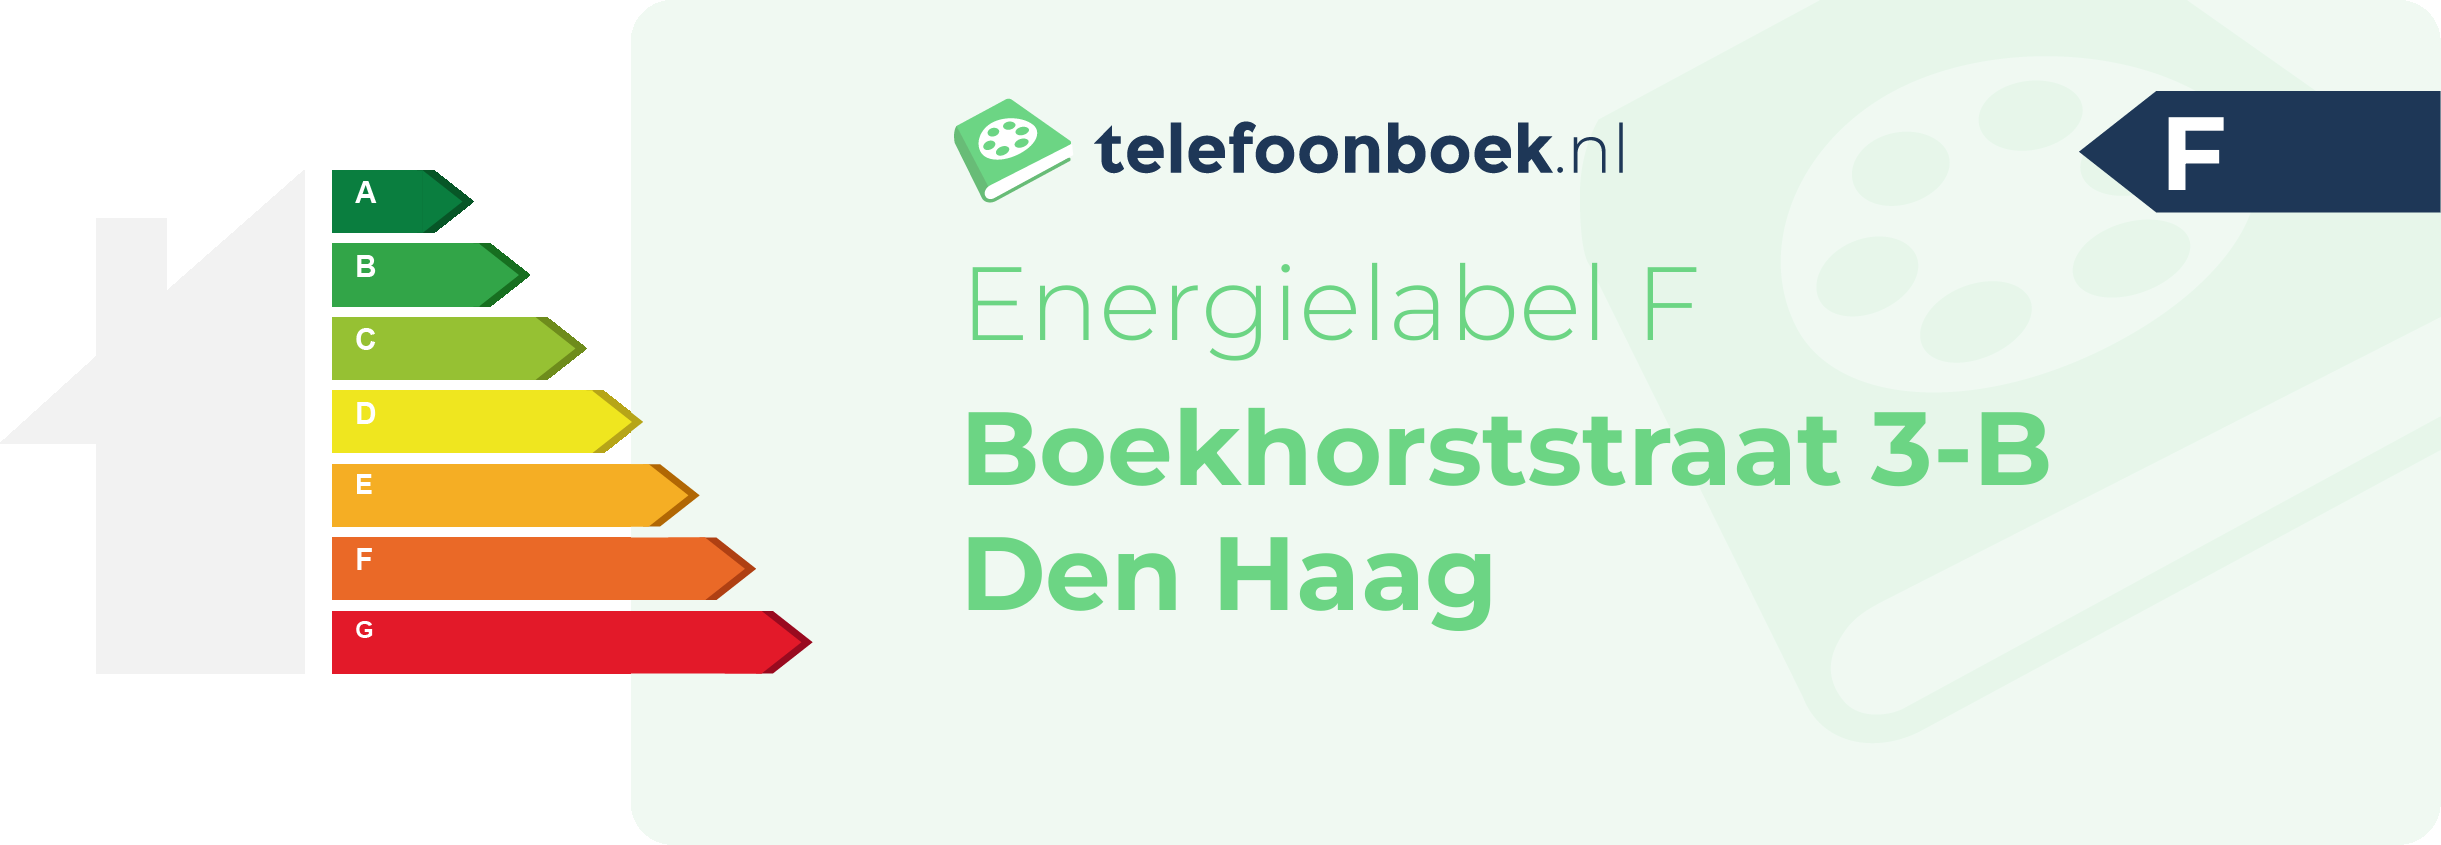 Energielabel Boekhorststraat 3-B Den Haag